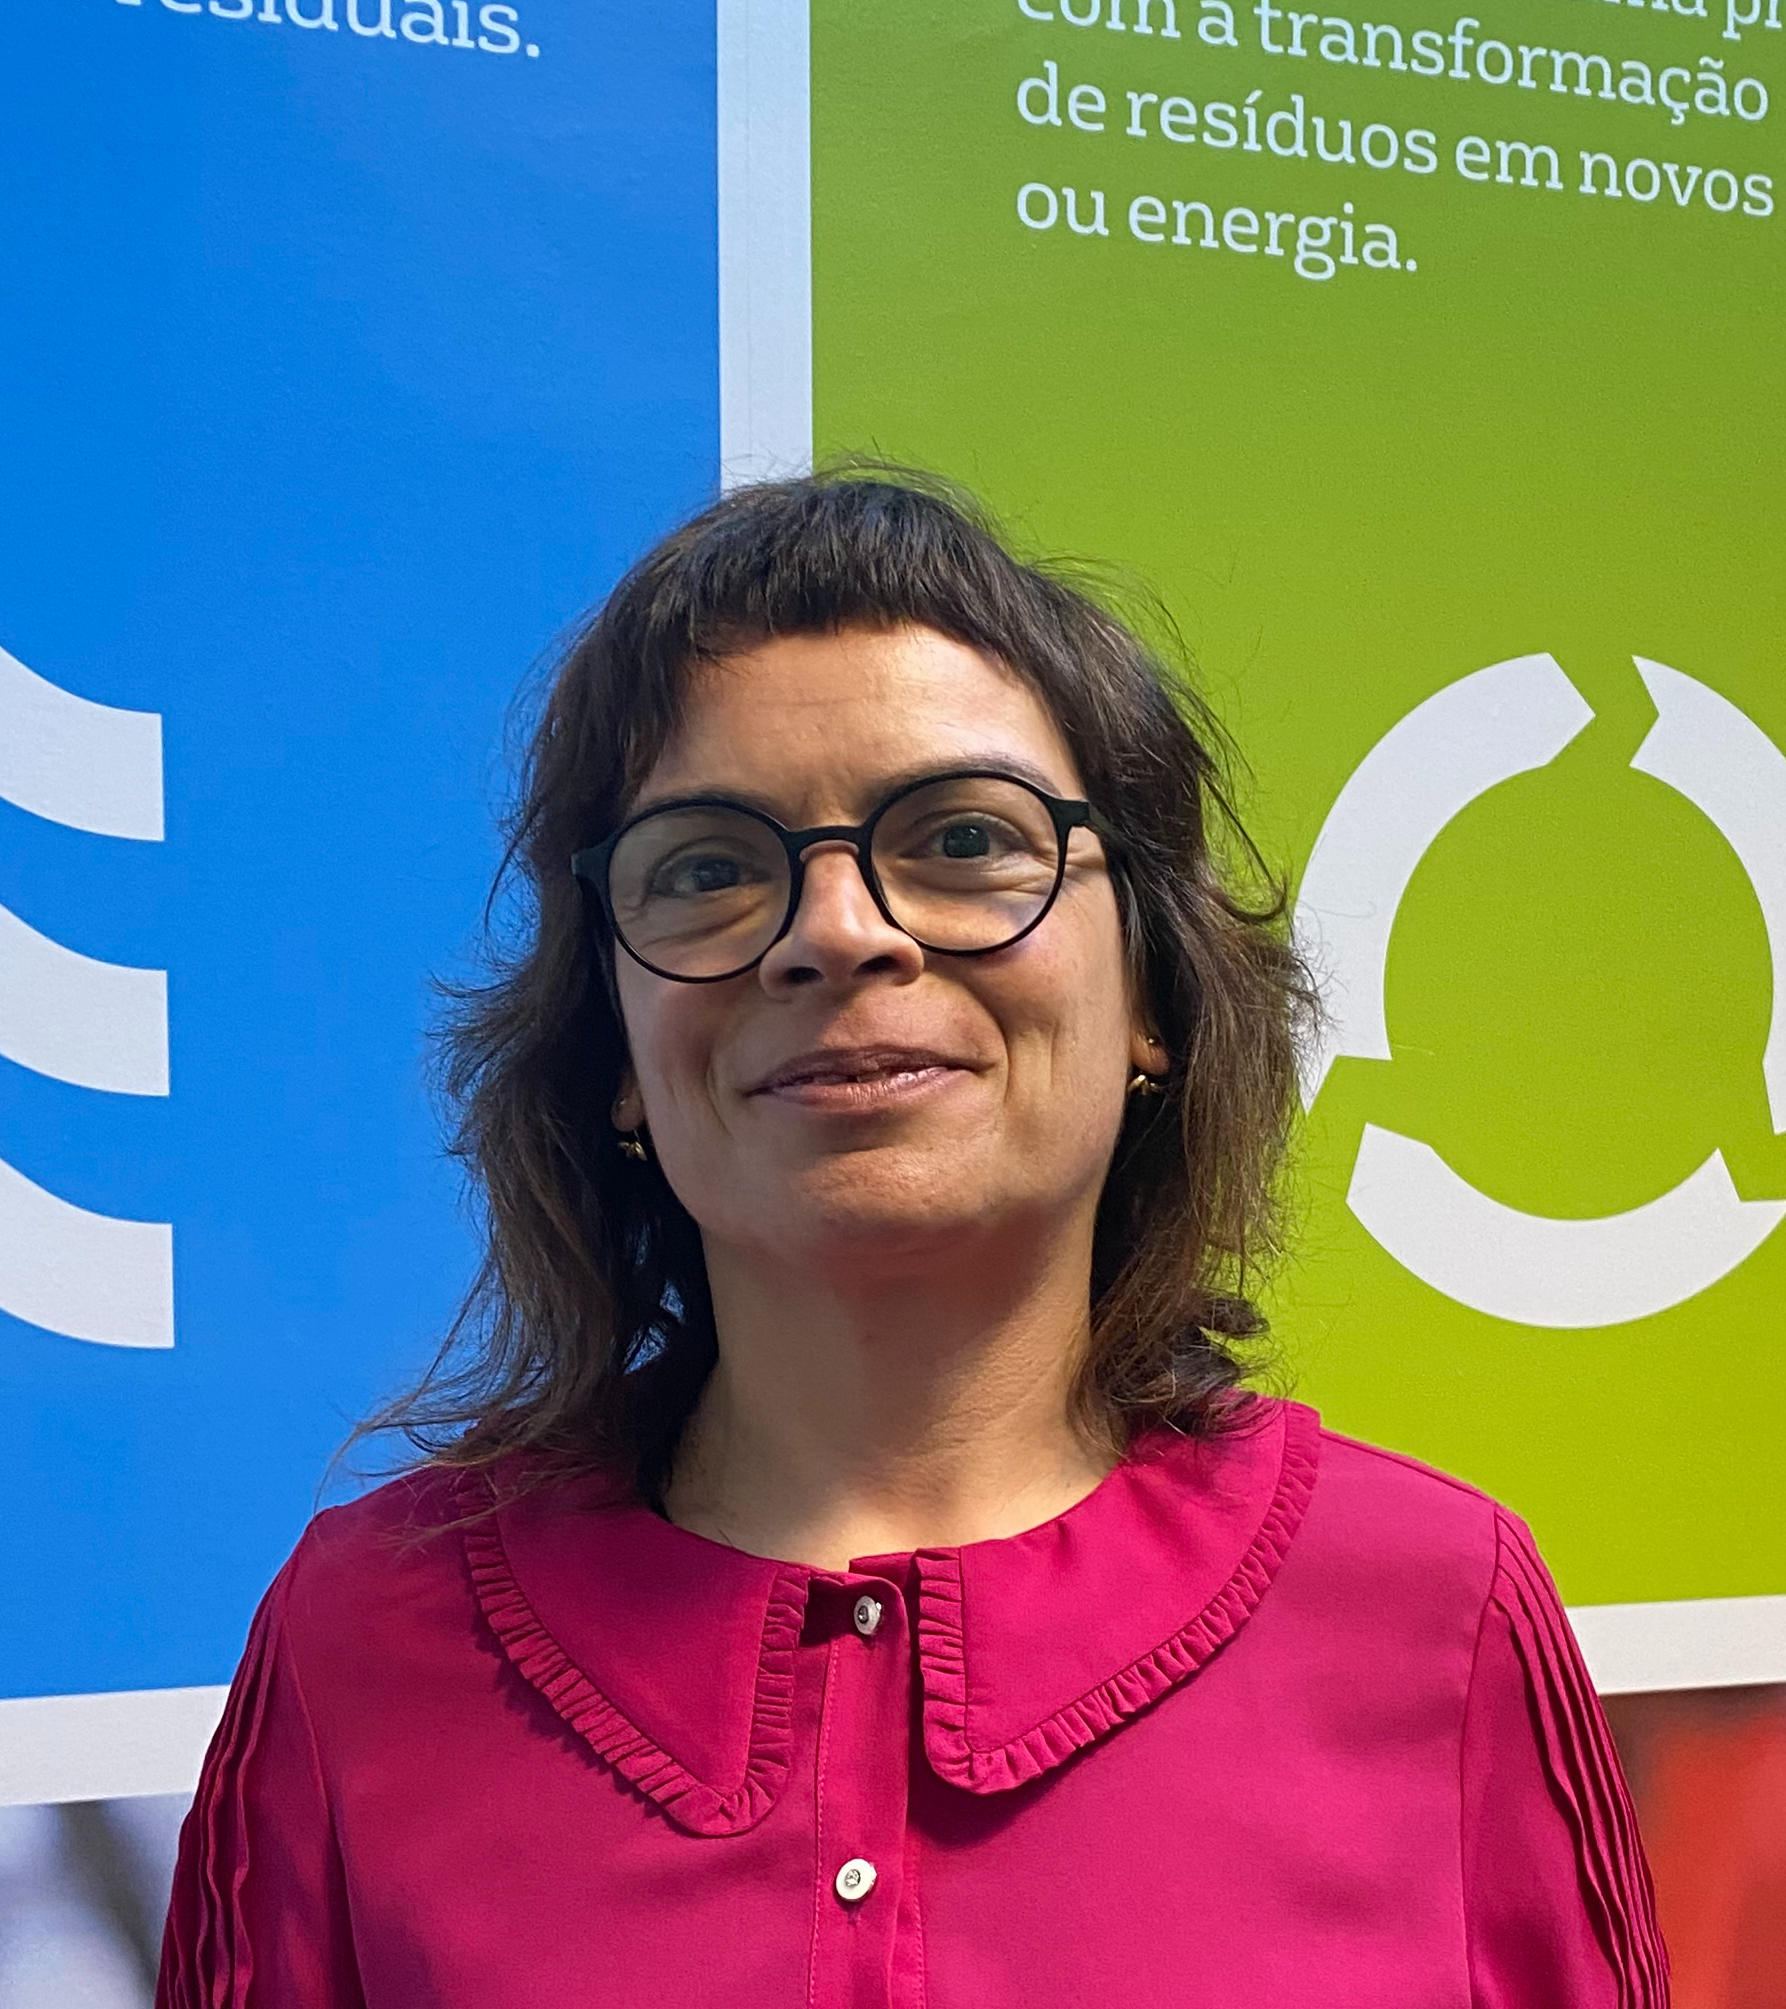 Tânia Lopes, Coordenadora de Segurança Veolia Portugal